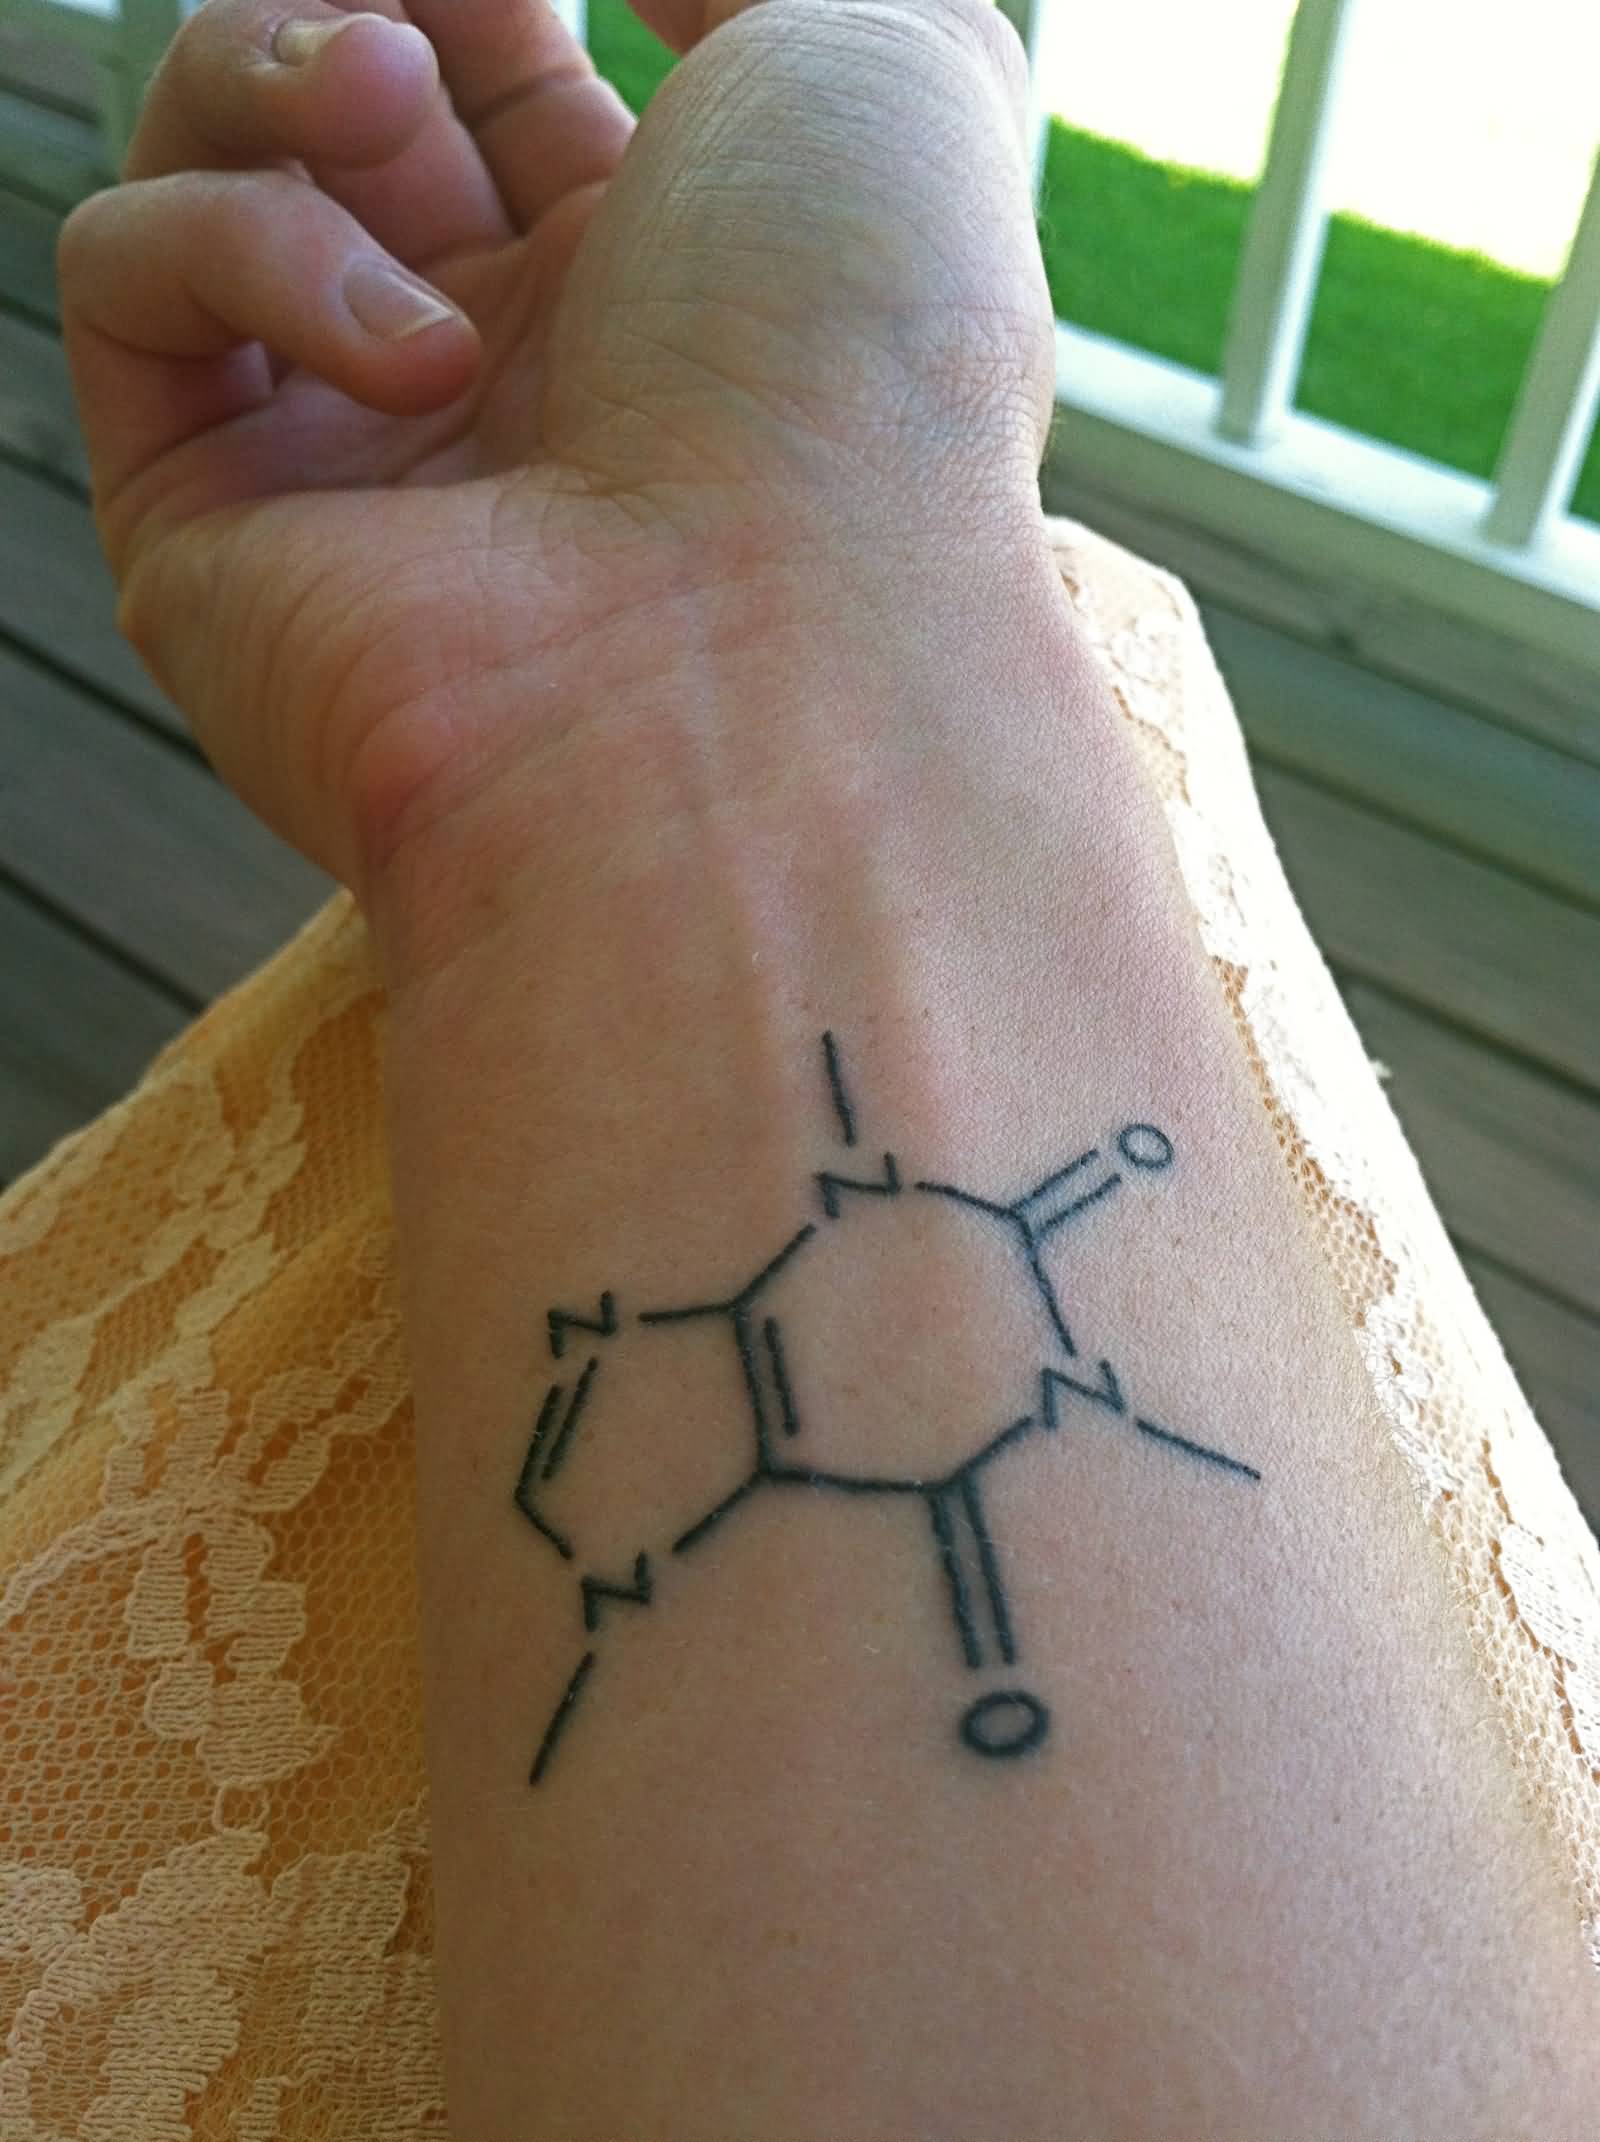 Chemistry Equation Tattoo On Wrist